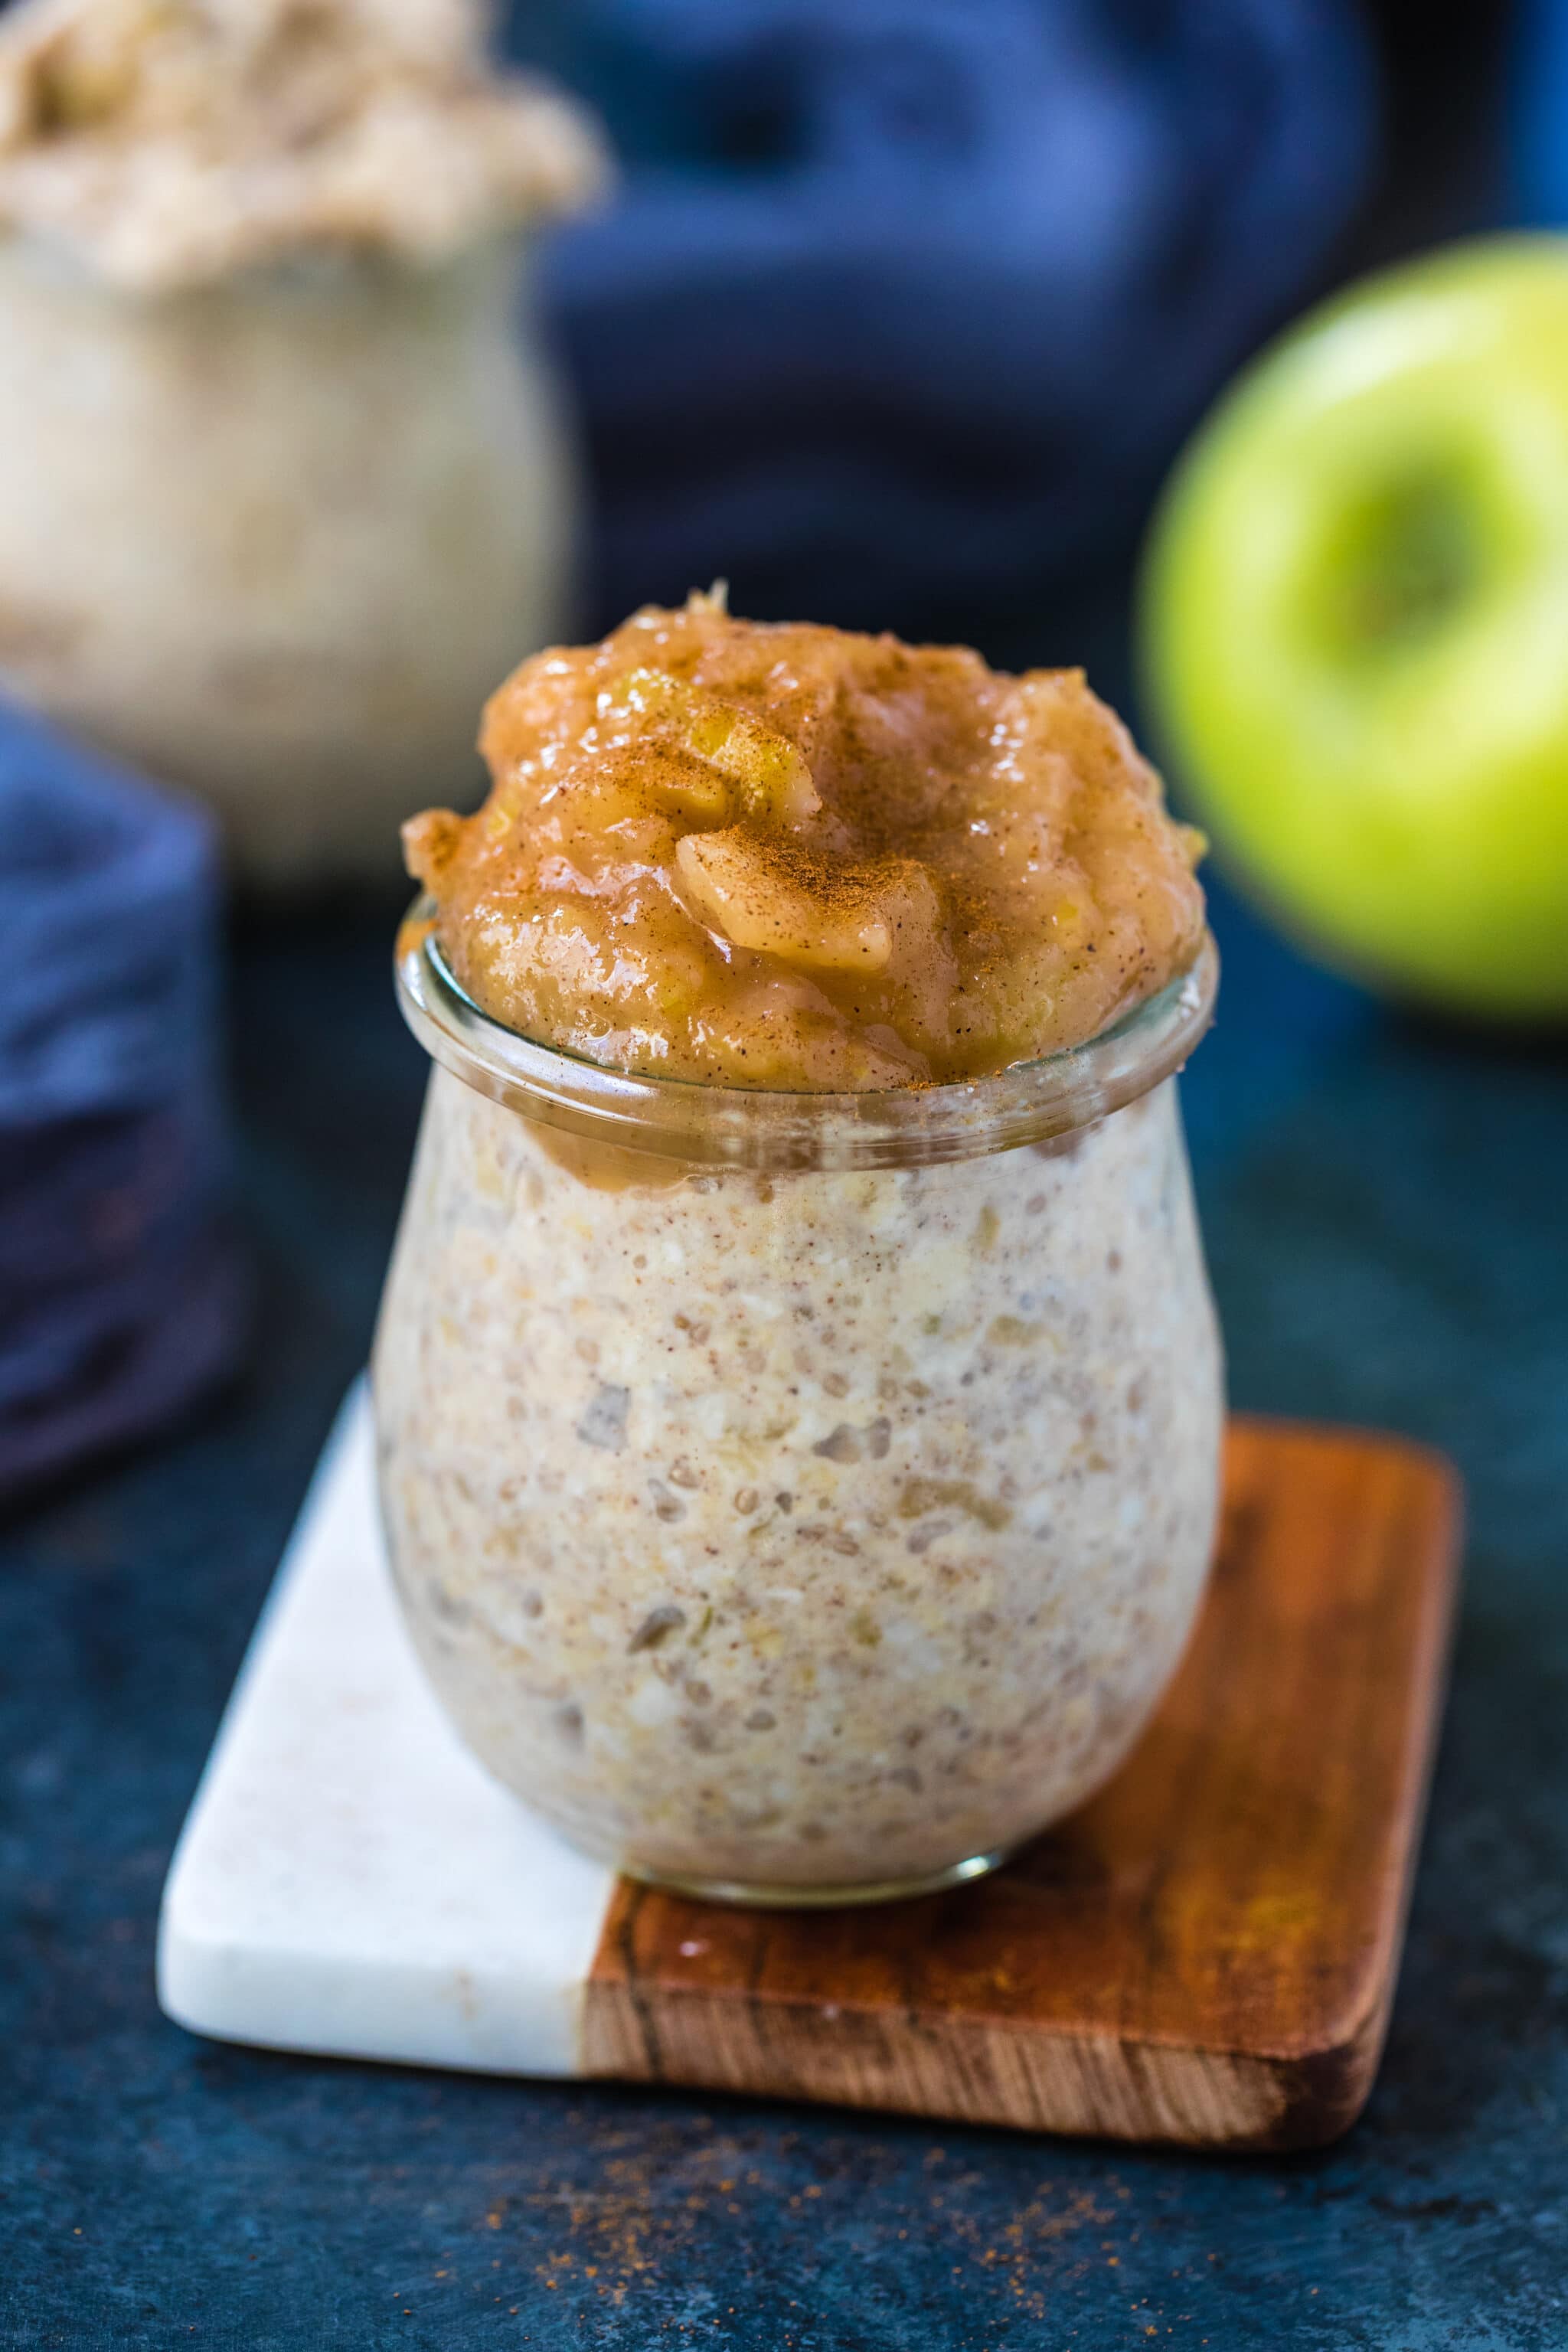 applesauce overnight oats in a glass jar